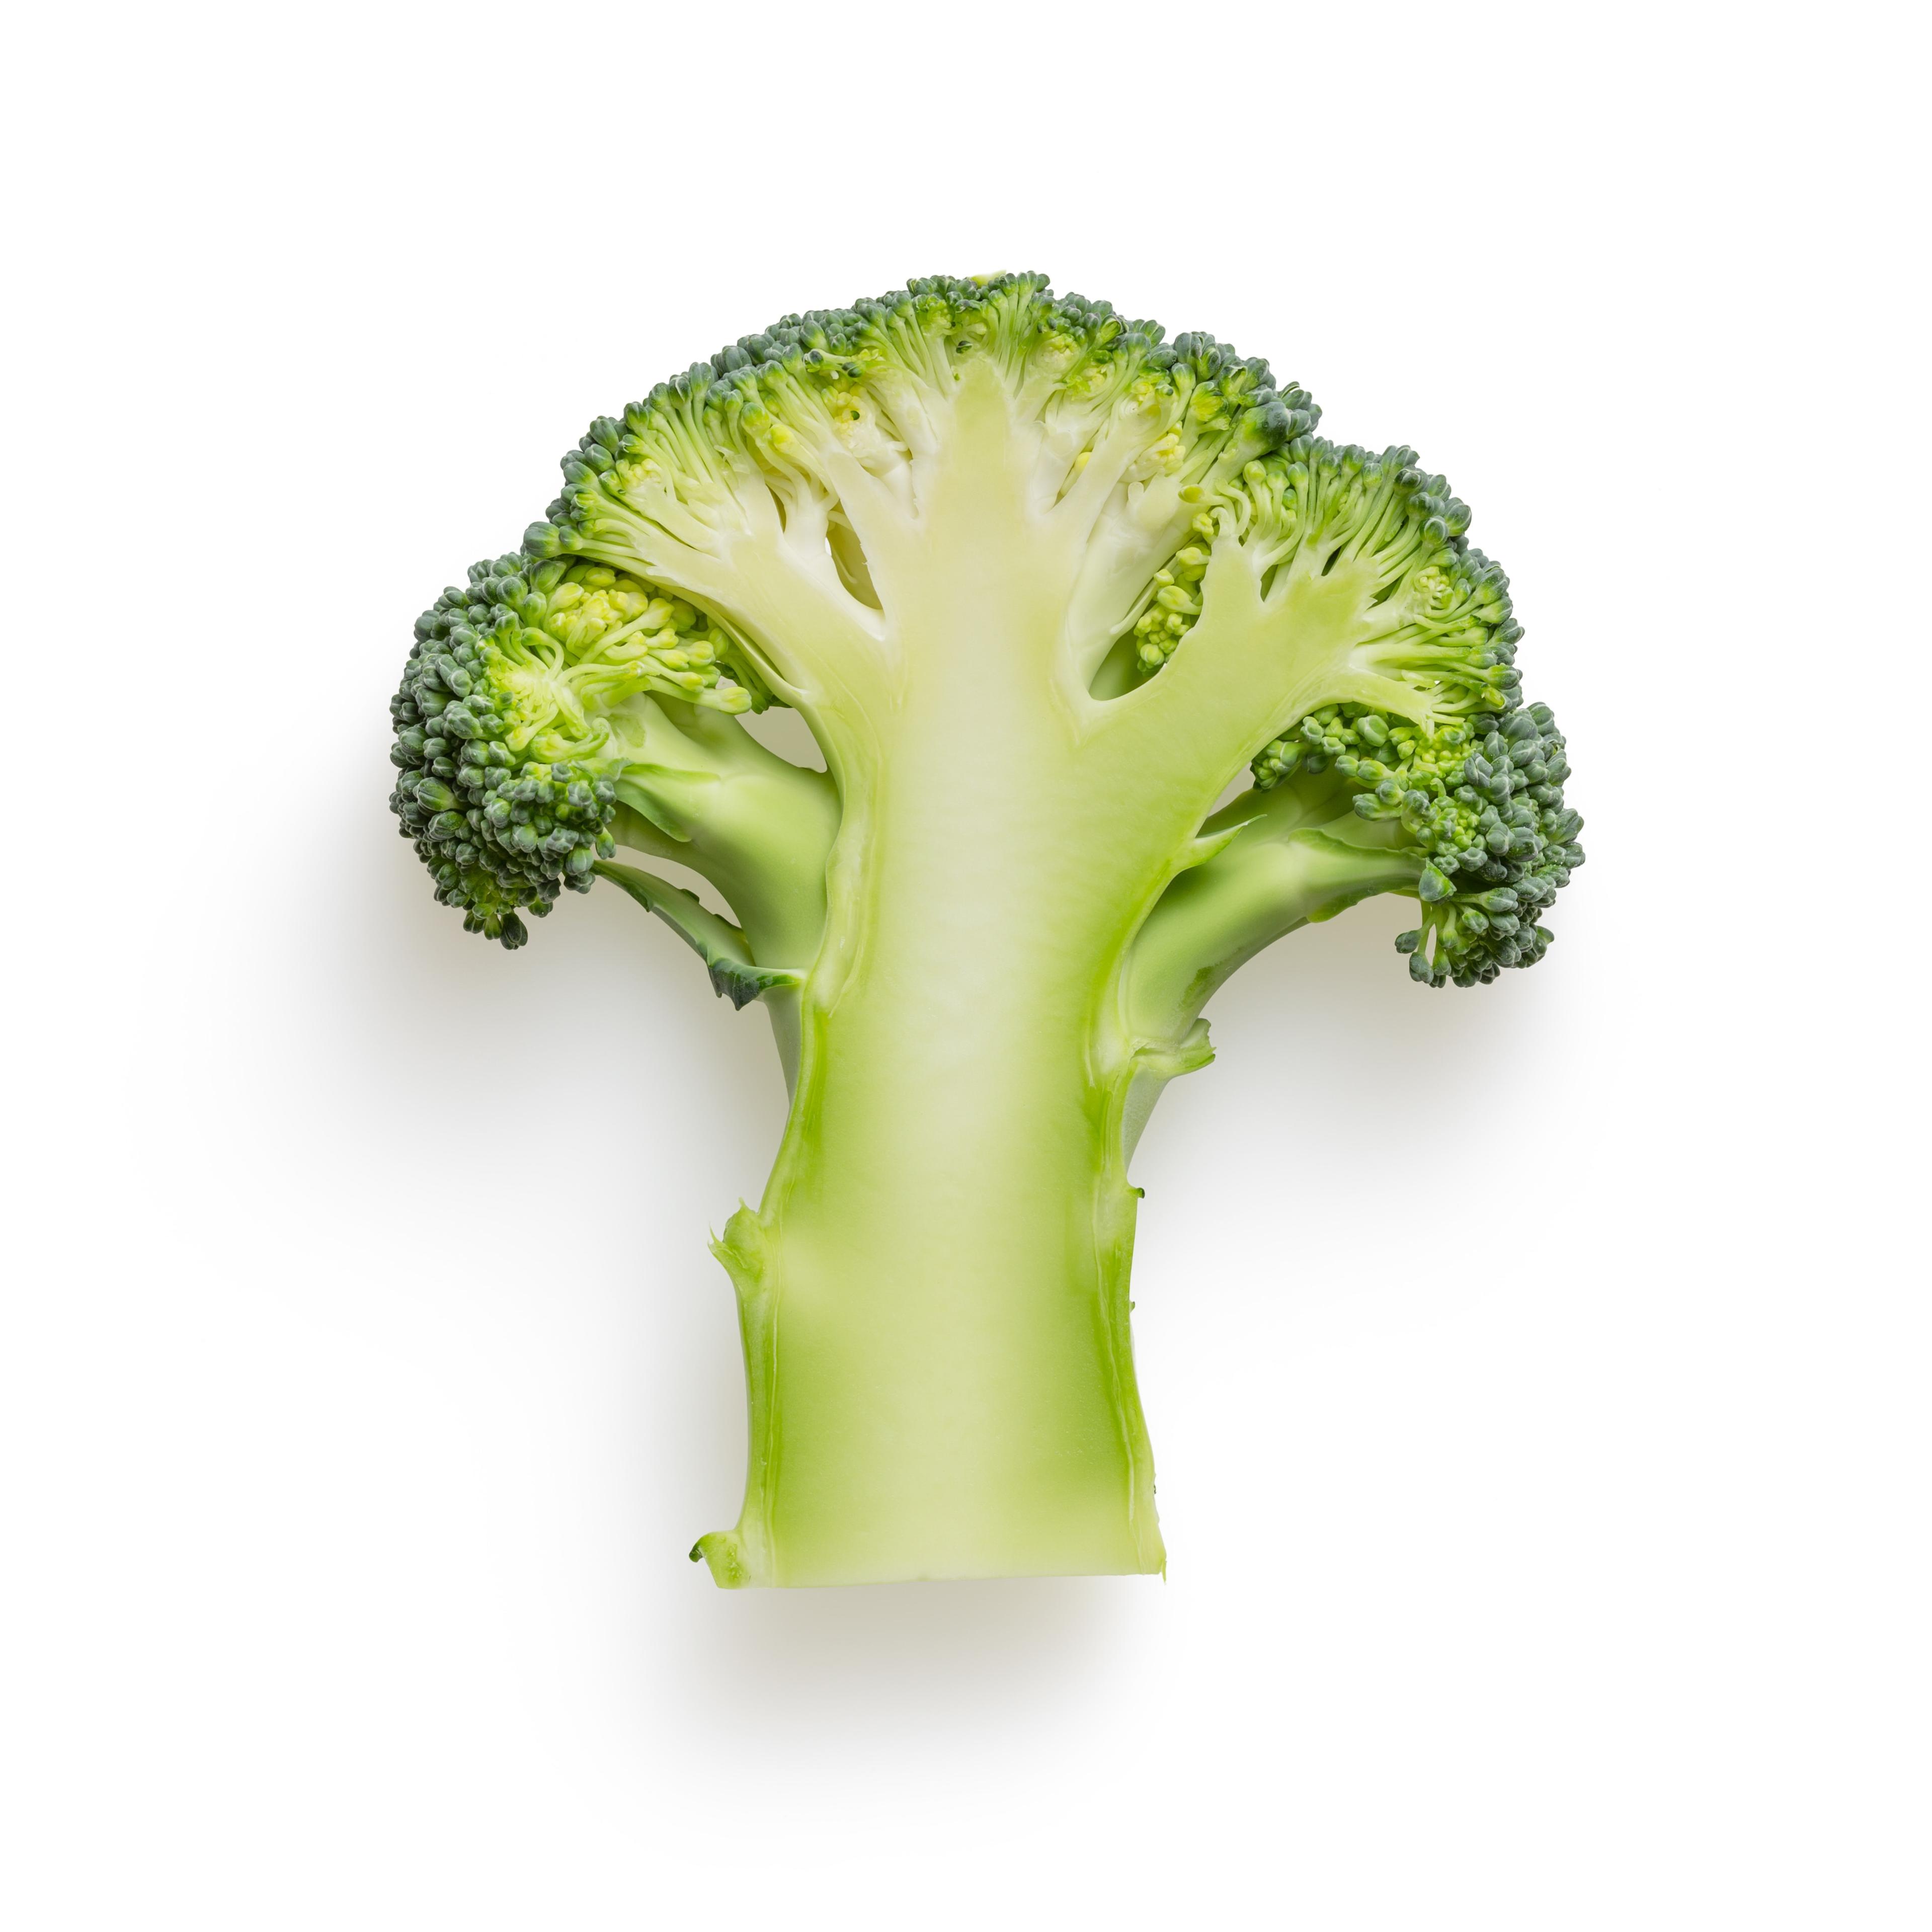 Właściwości zdrowotne brokuła. Brokuły - wartości odżywcze, właściwości zdrowotne, zastosowanie. Jak jeść brokuły na surowo? 